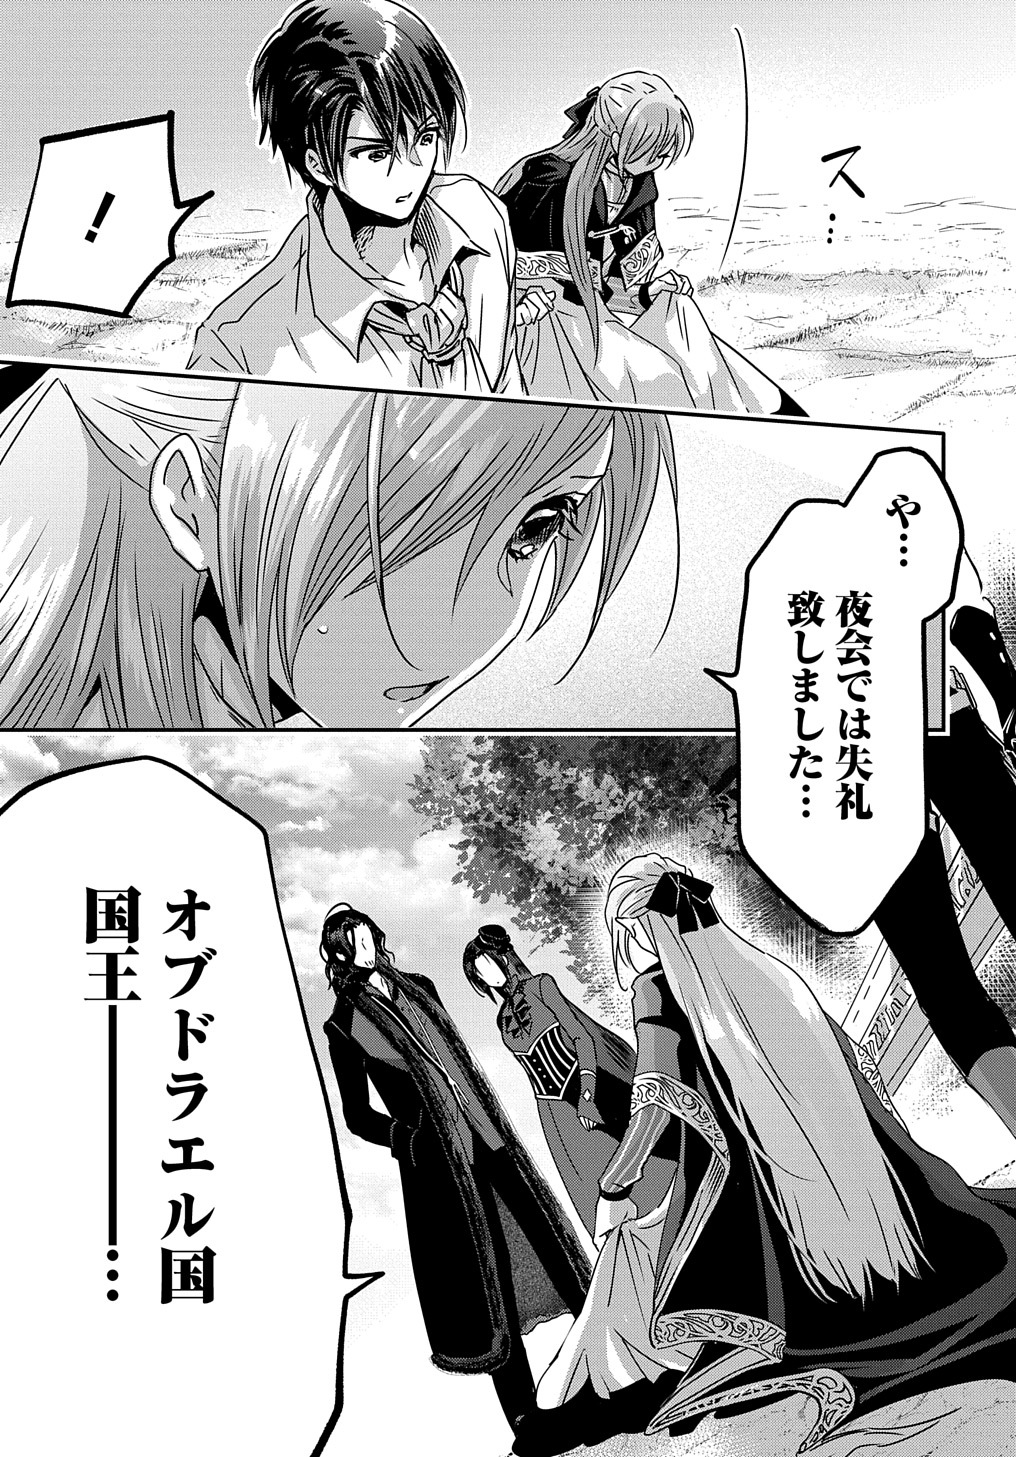 Konyakusha no Uwaki Genba wo Michatta no de Hajimari no Kane ga narimashita - Chapter 7 - Page 29